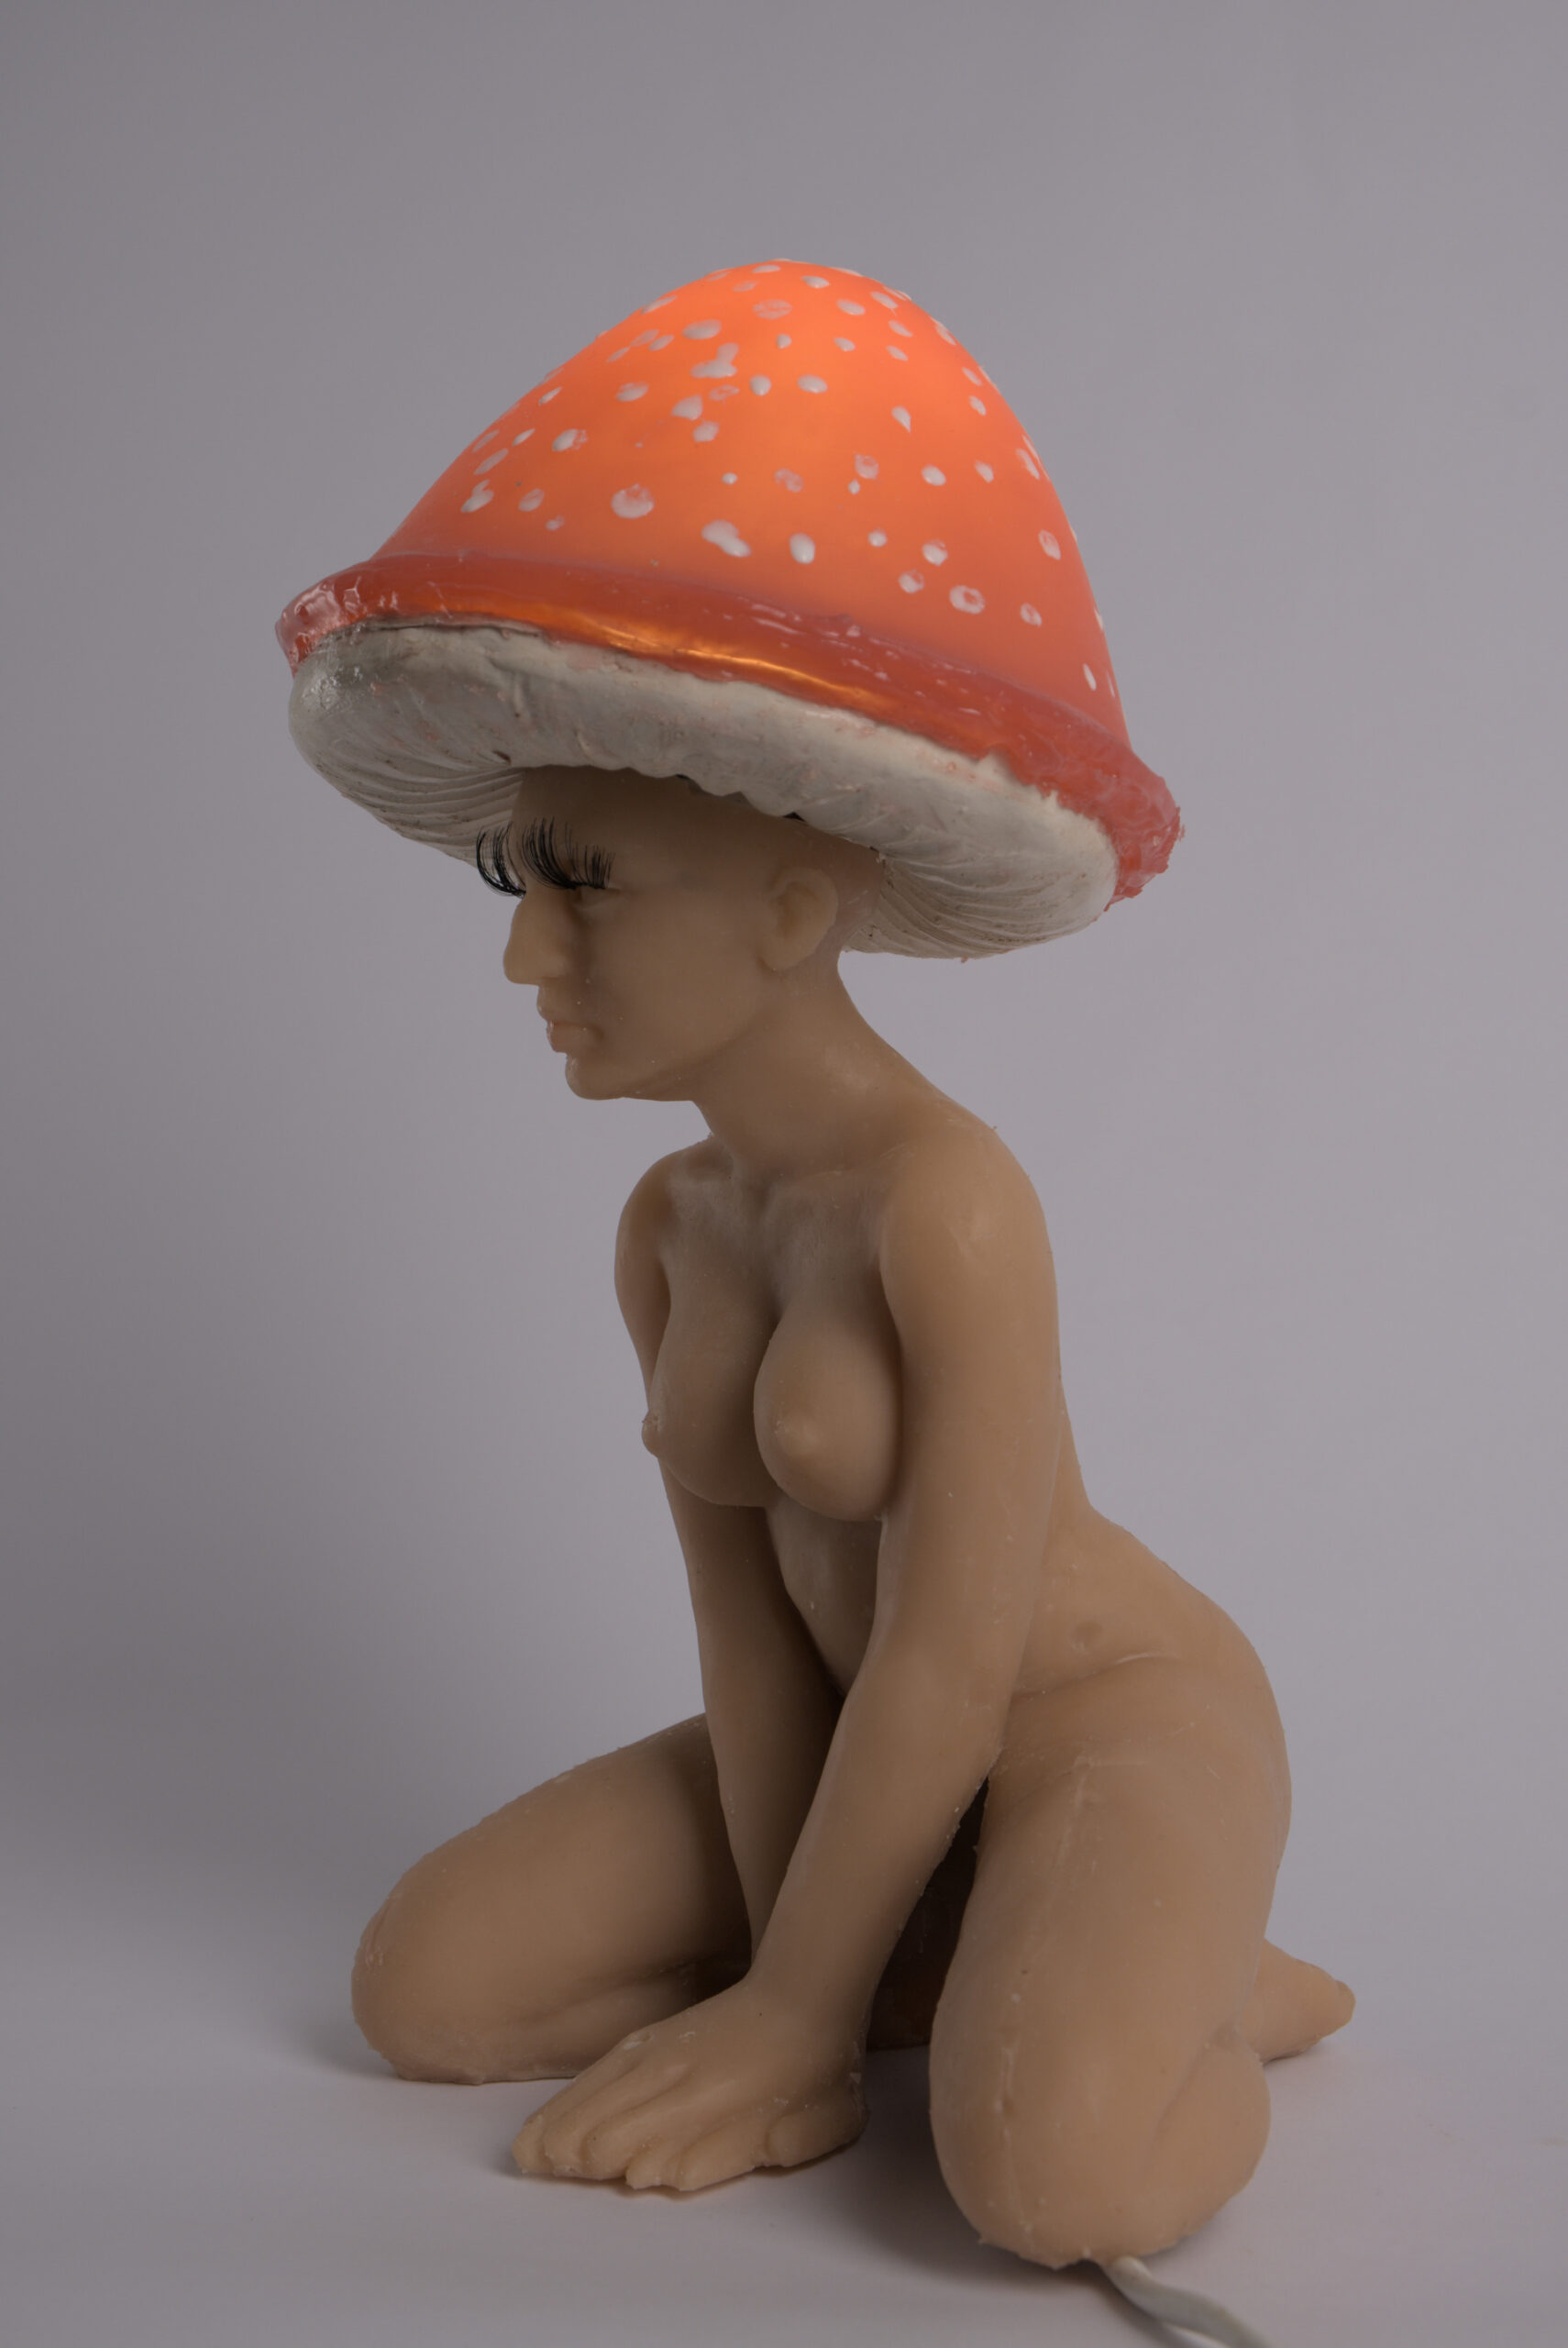 zdjęcie przedstawia lampę w formie postaci kobiecej, siedzącej na ugiętych nogach, z rękami opartymi z przodu na podłodze, skrzyżowane. Postać ma  kapelusz muchomora na głowie i sztuczne rzęsy przyklejone do powiek. Lampka jest włączona